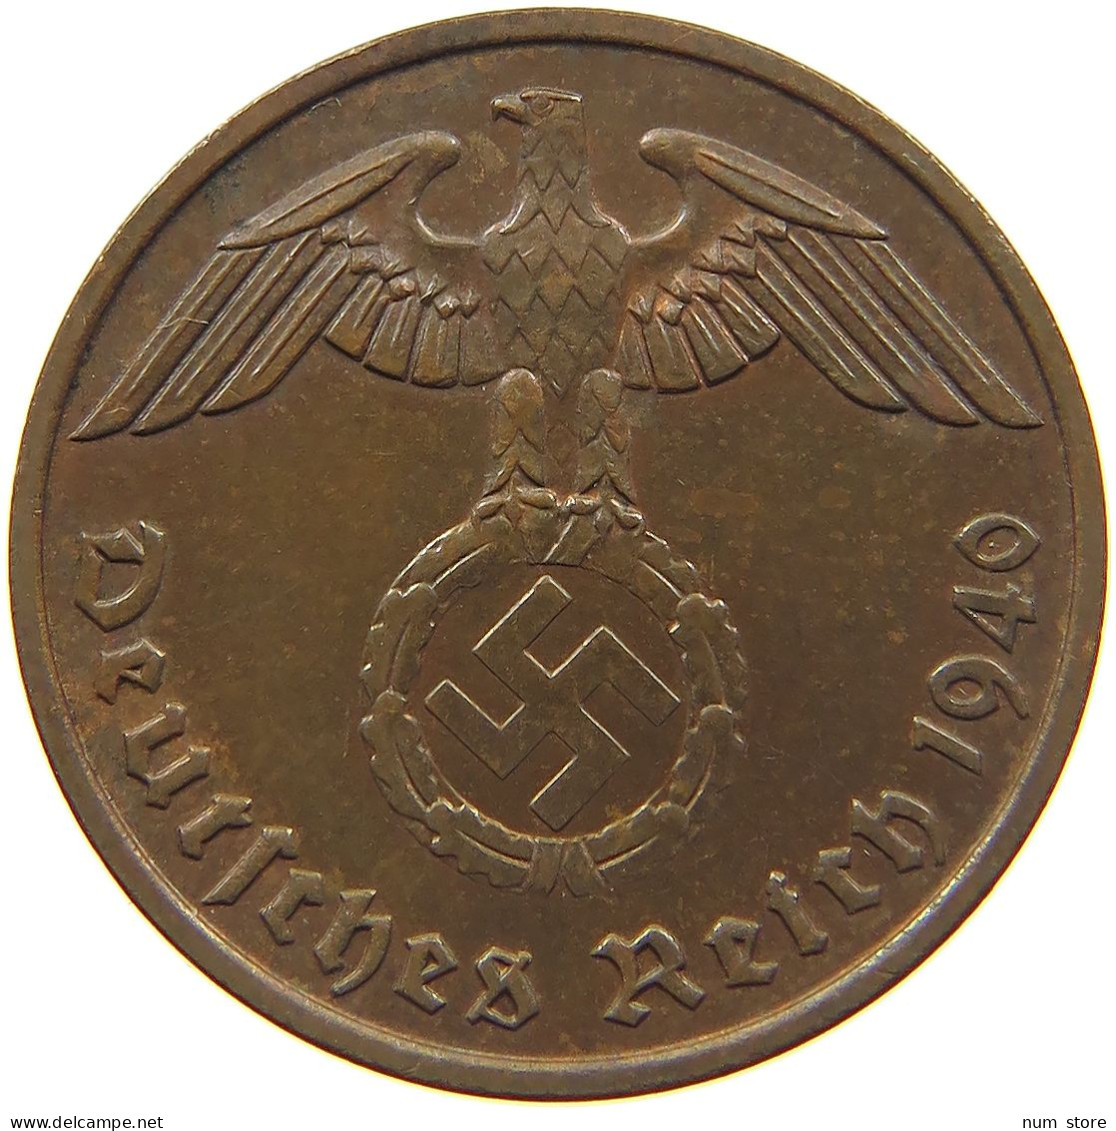 DRITTES REICH 2 PFENNIG 1940 E  #MA 022580 - 2 Reichspfennig